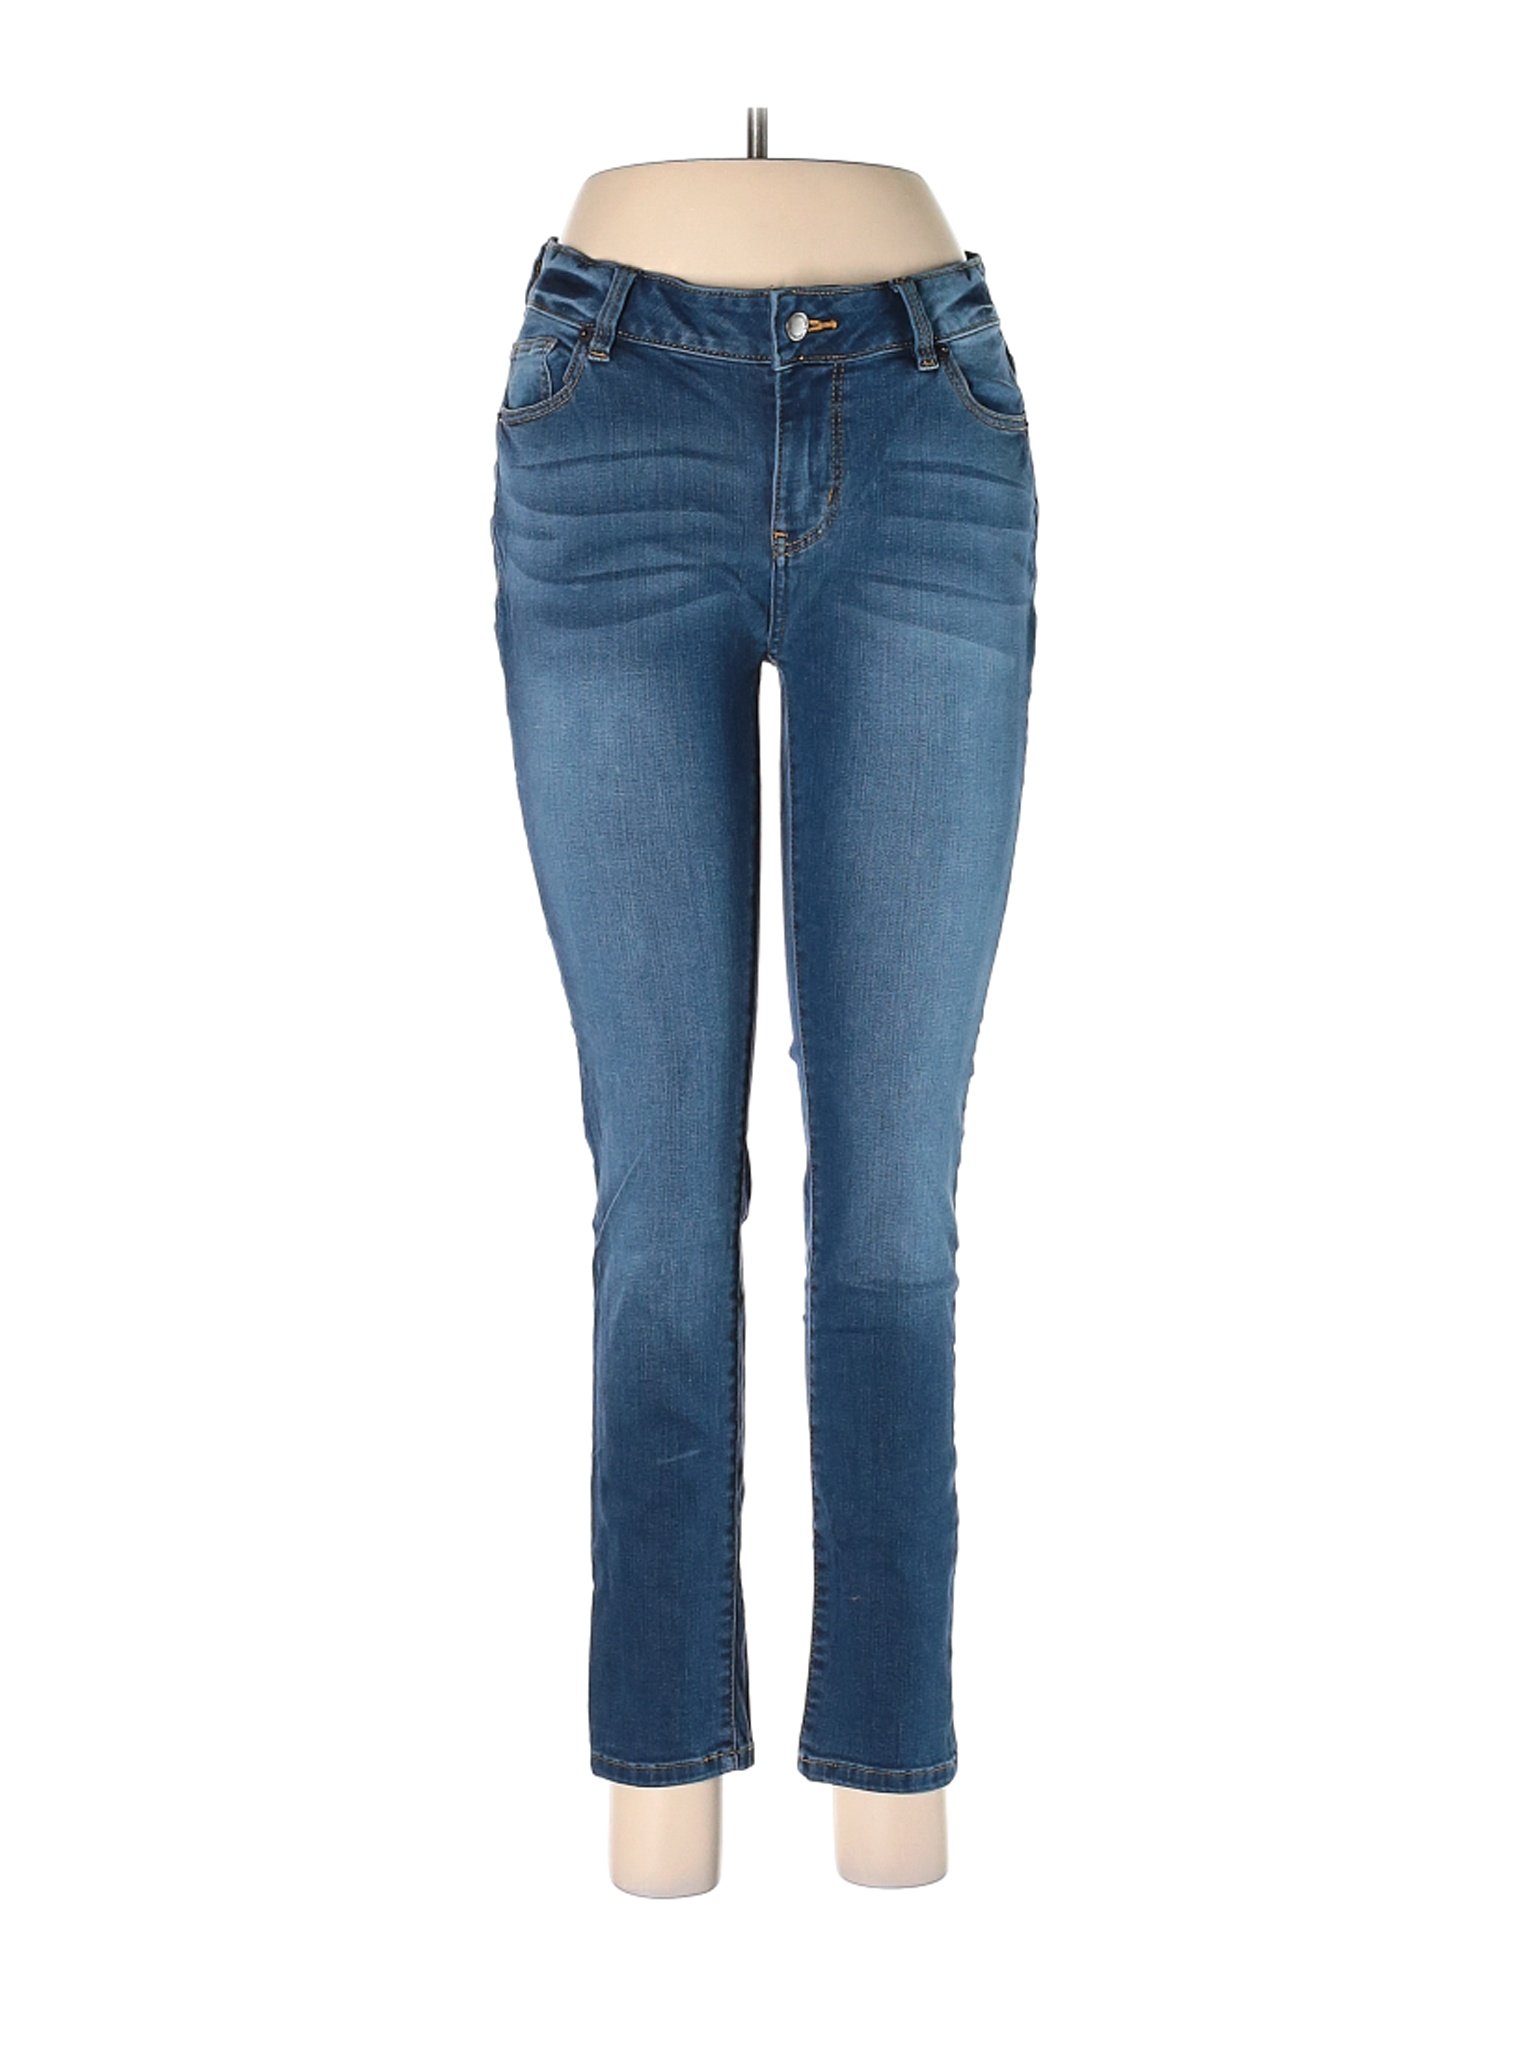 Westport Women Blue Jeans 6 | eBay